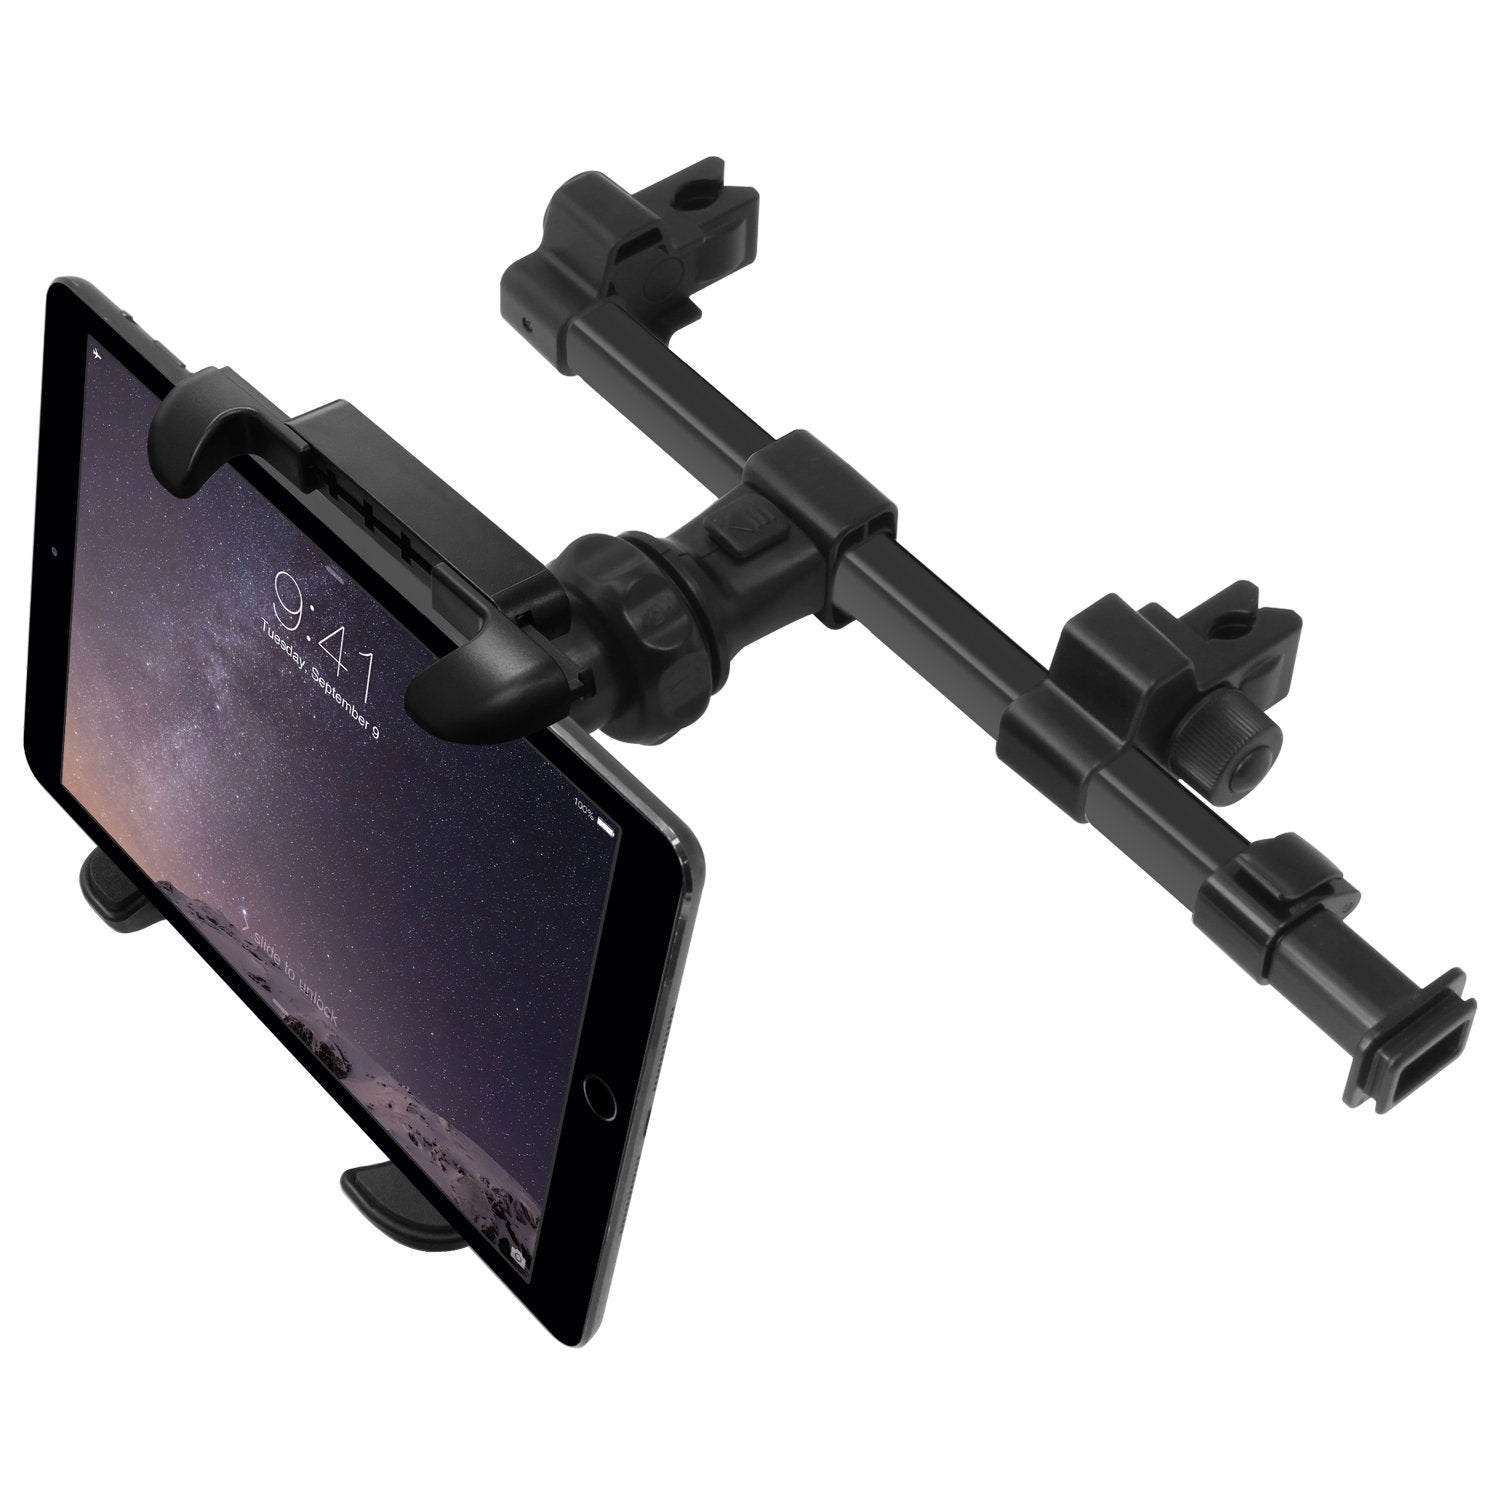 TOCHIO 2 Pack Tablet iPad Halter für Auto Rücksitz Tablet Halter  Telefonhalterung Ständer für iPad, Tablets, Nintendo Switch, iPhone,  Smartphones